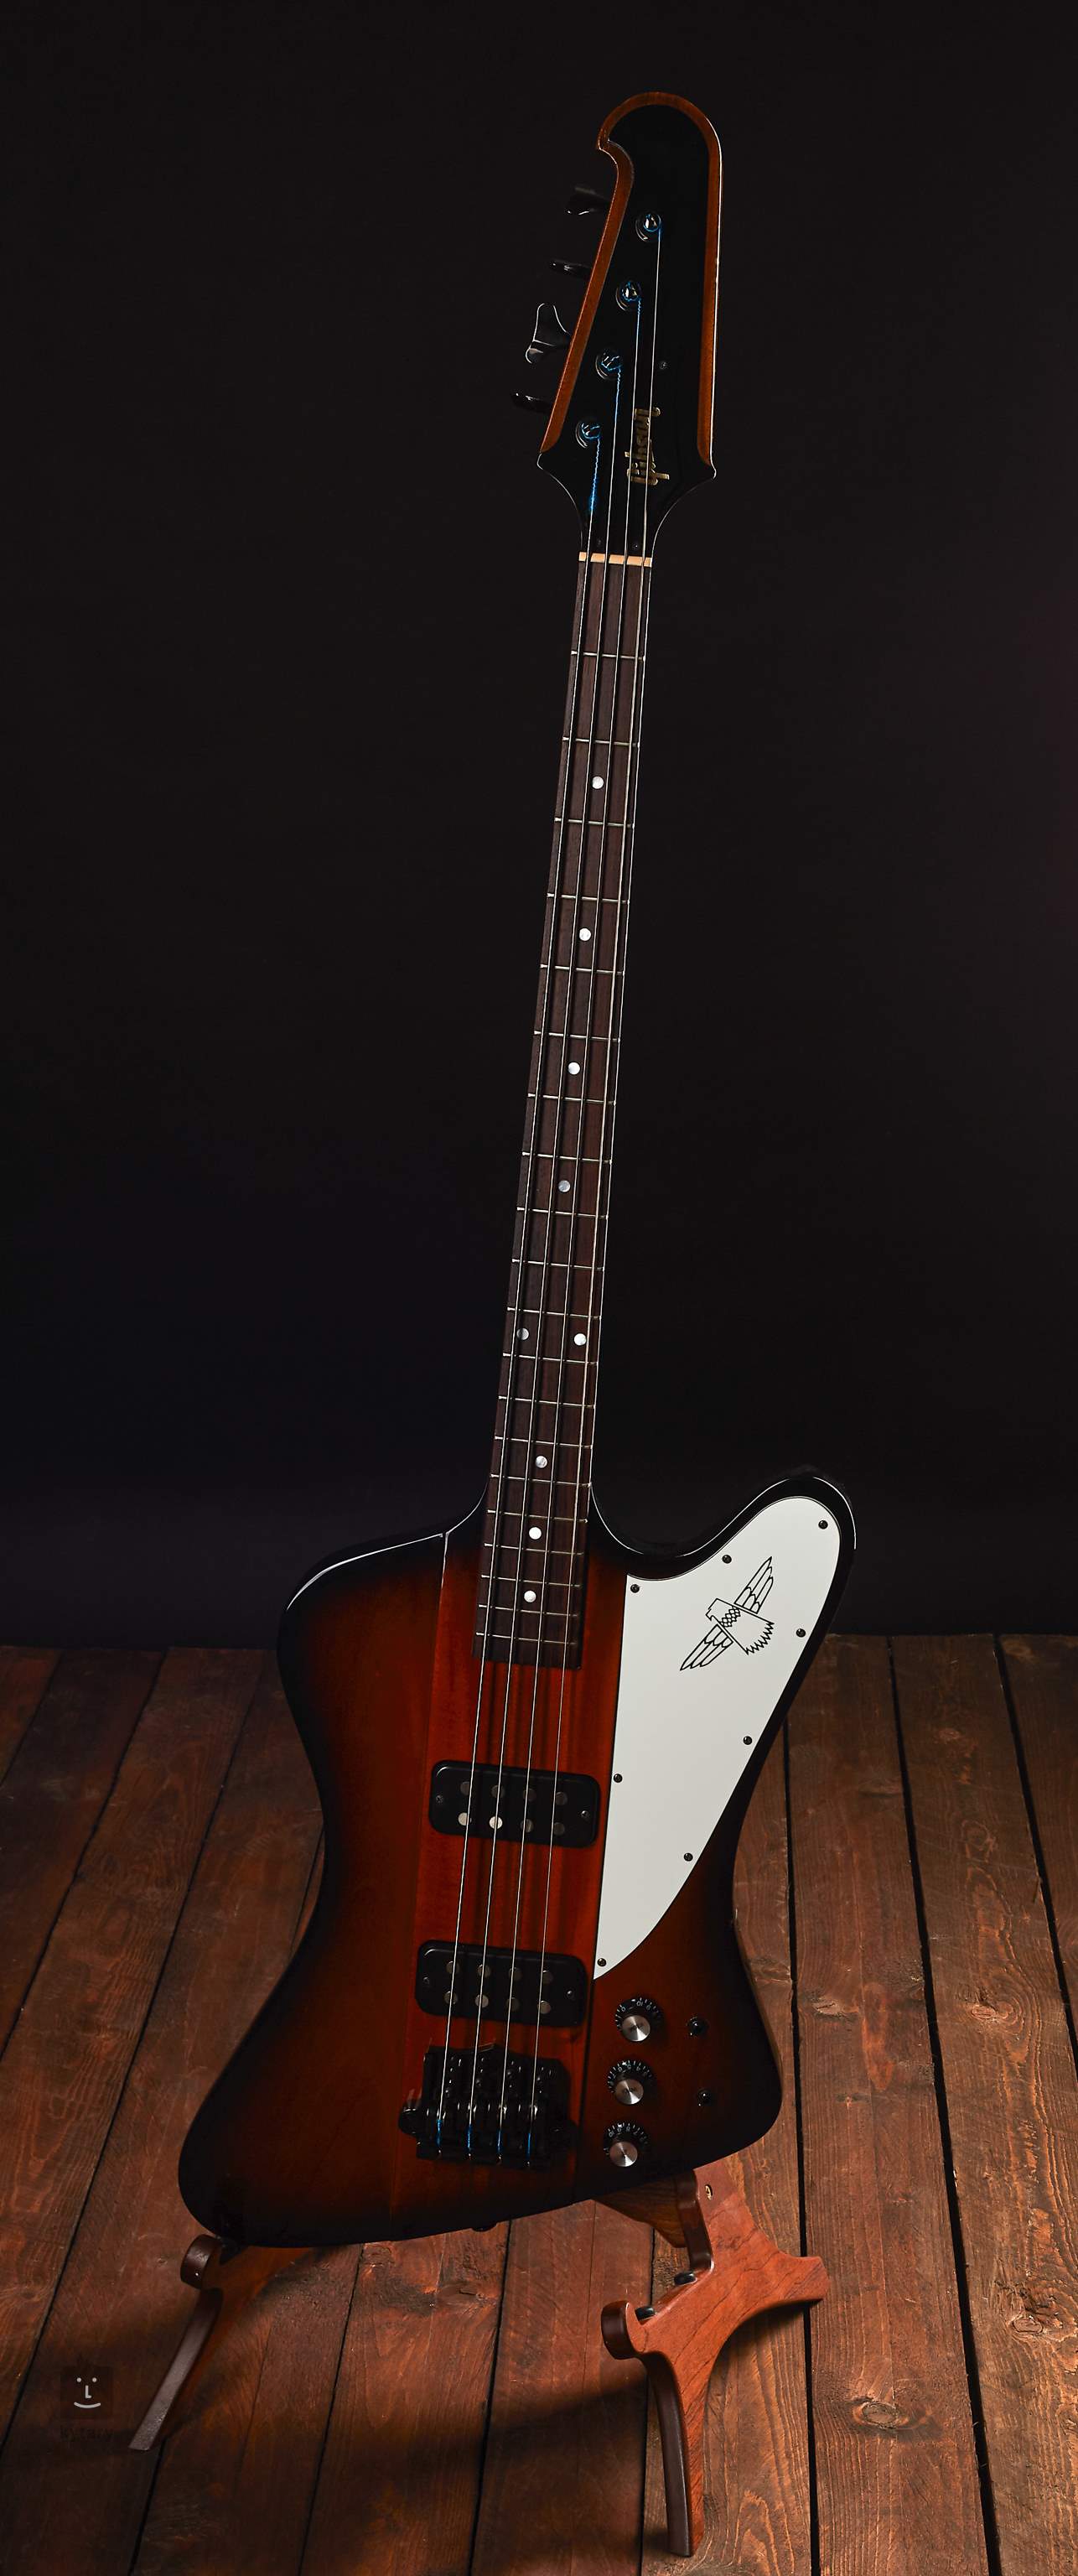 gibson thunderbird electric guitar